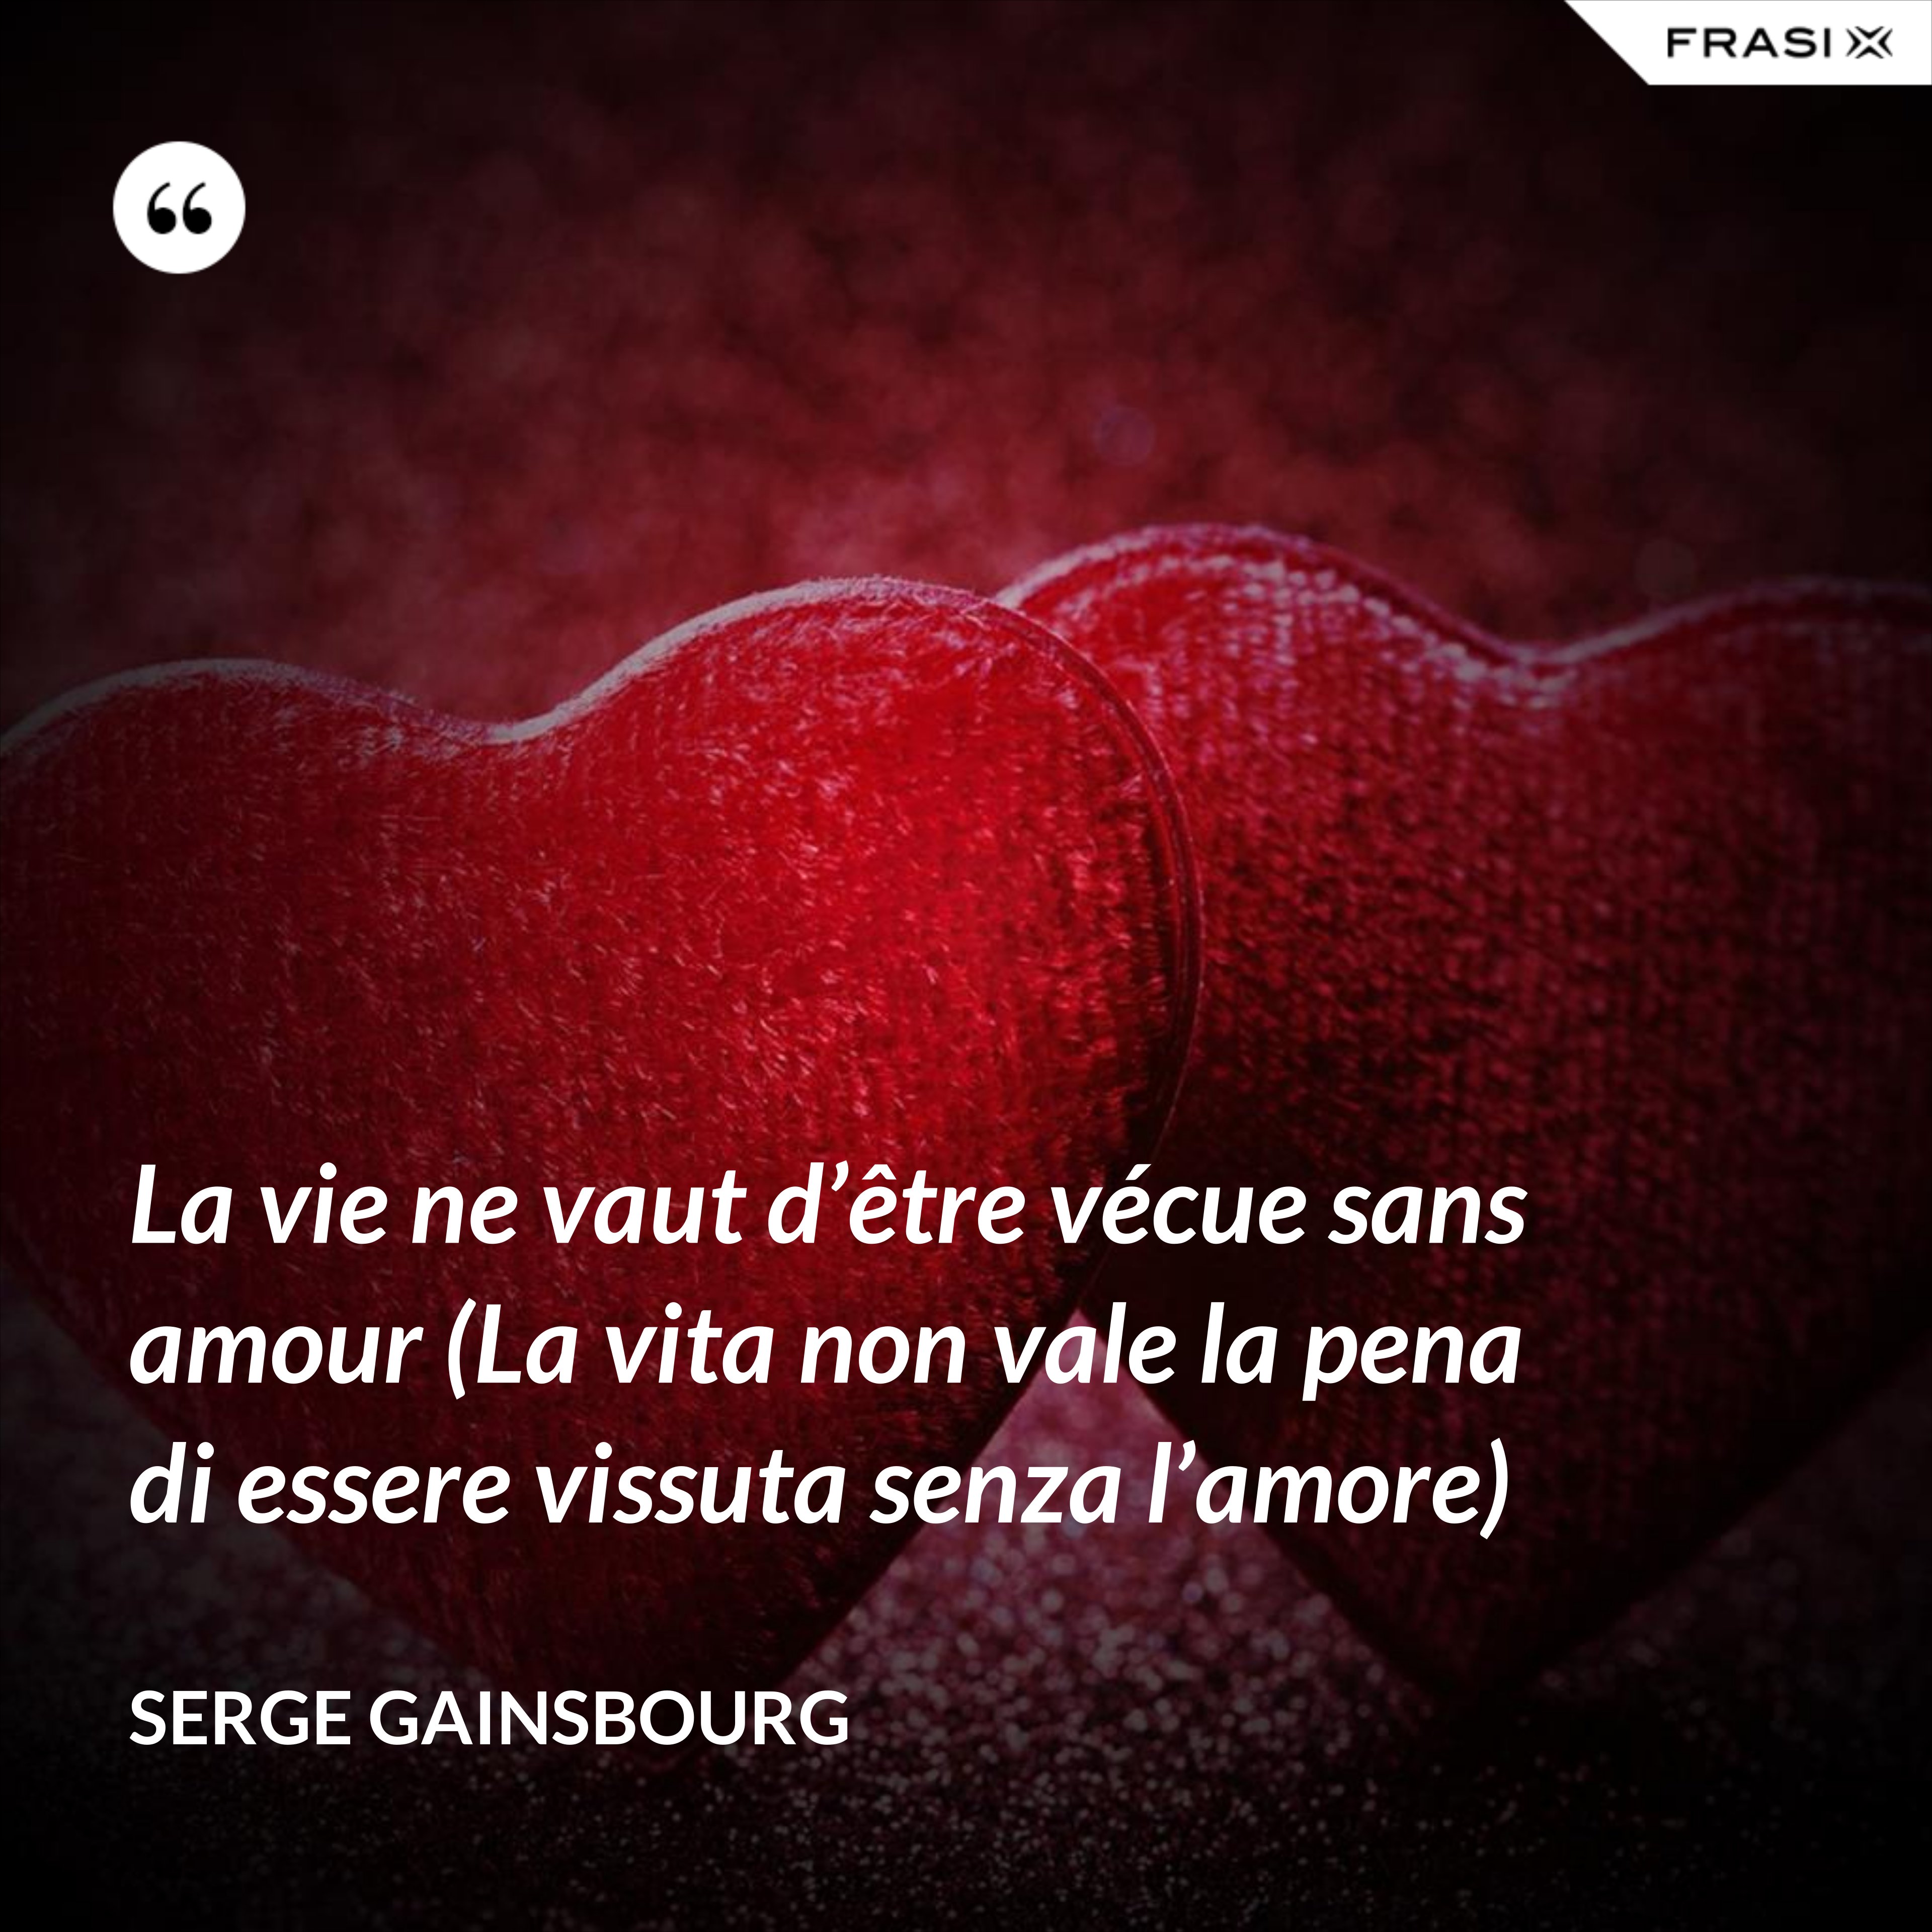 La vie ne vaut d’être vécue sans amour (La vita non vale la pena di essere vissuta senza l’amore) - Serge Gainsbourg